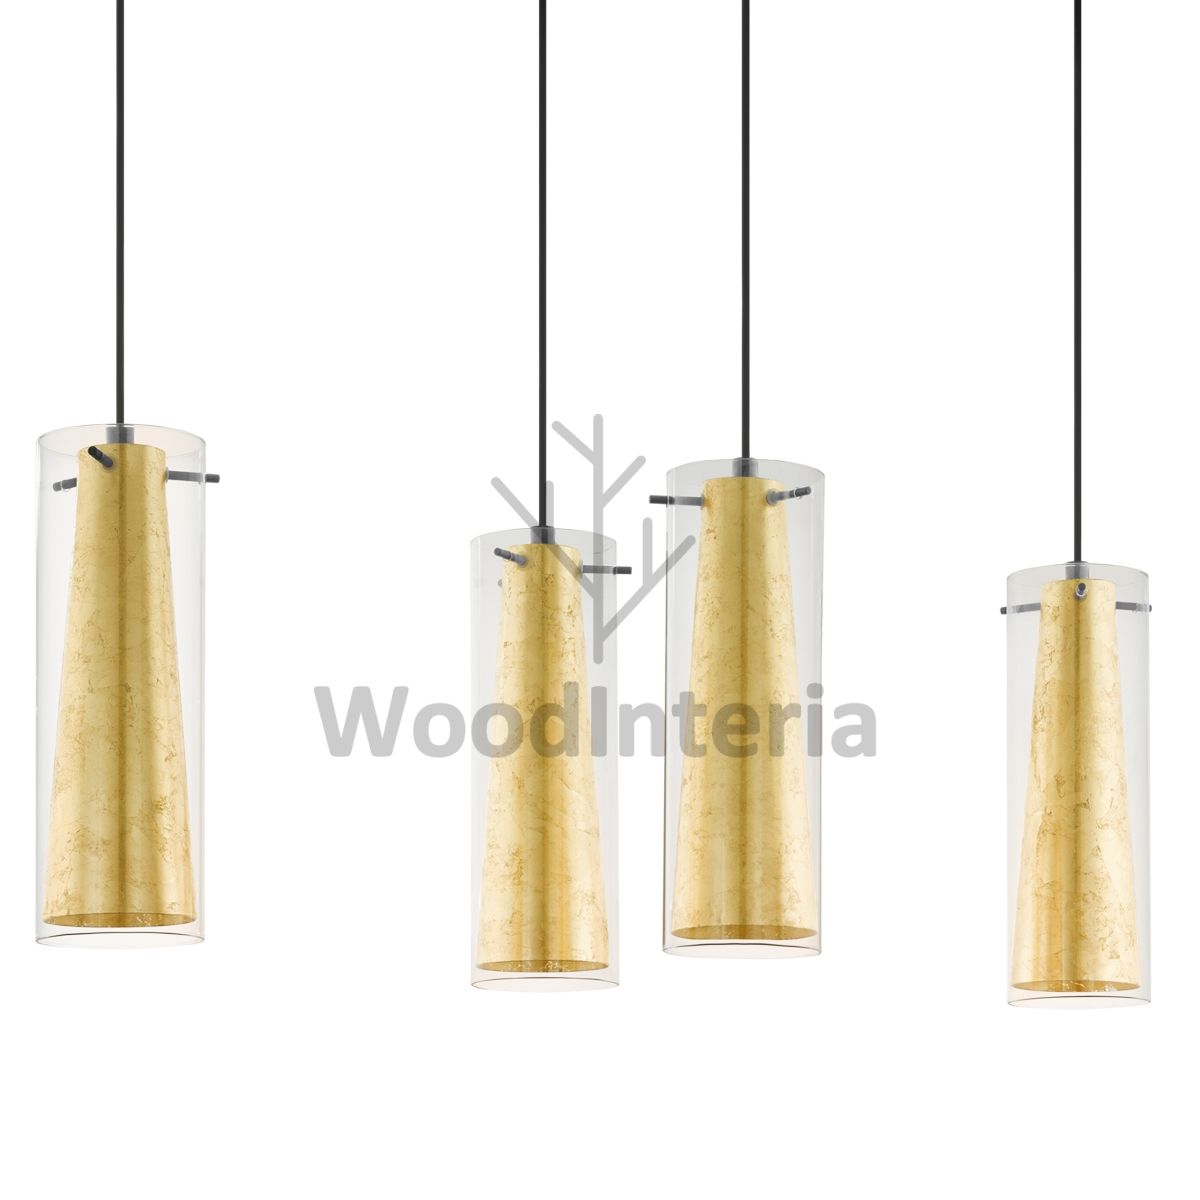 фото подвесной светильник hidden gold x в скандинавском интерьере лофт эко | WoodInteria